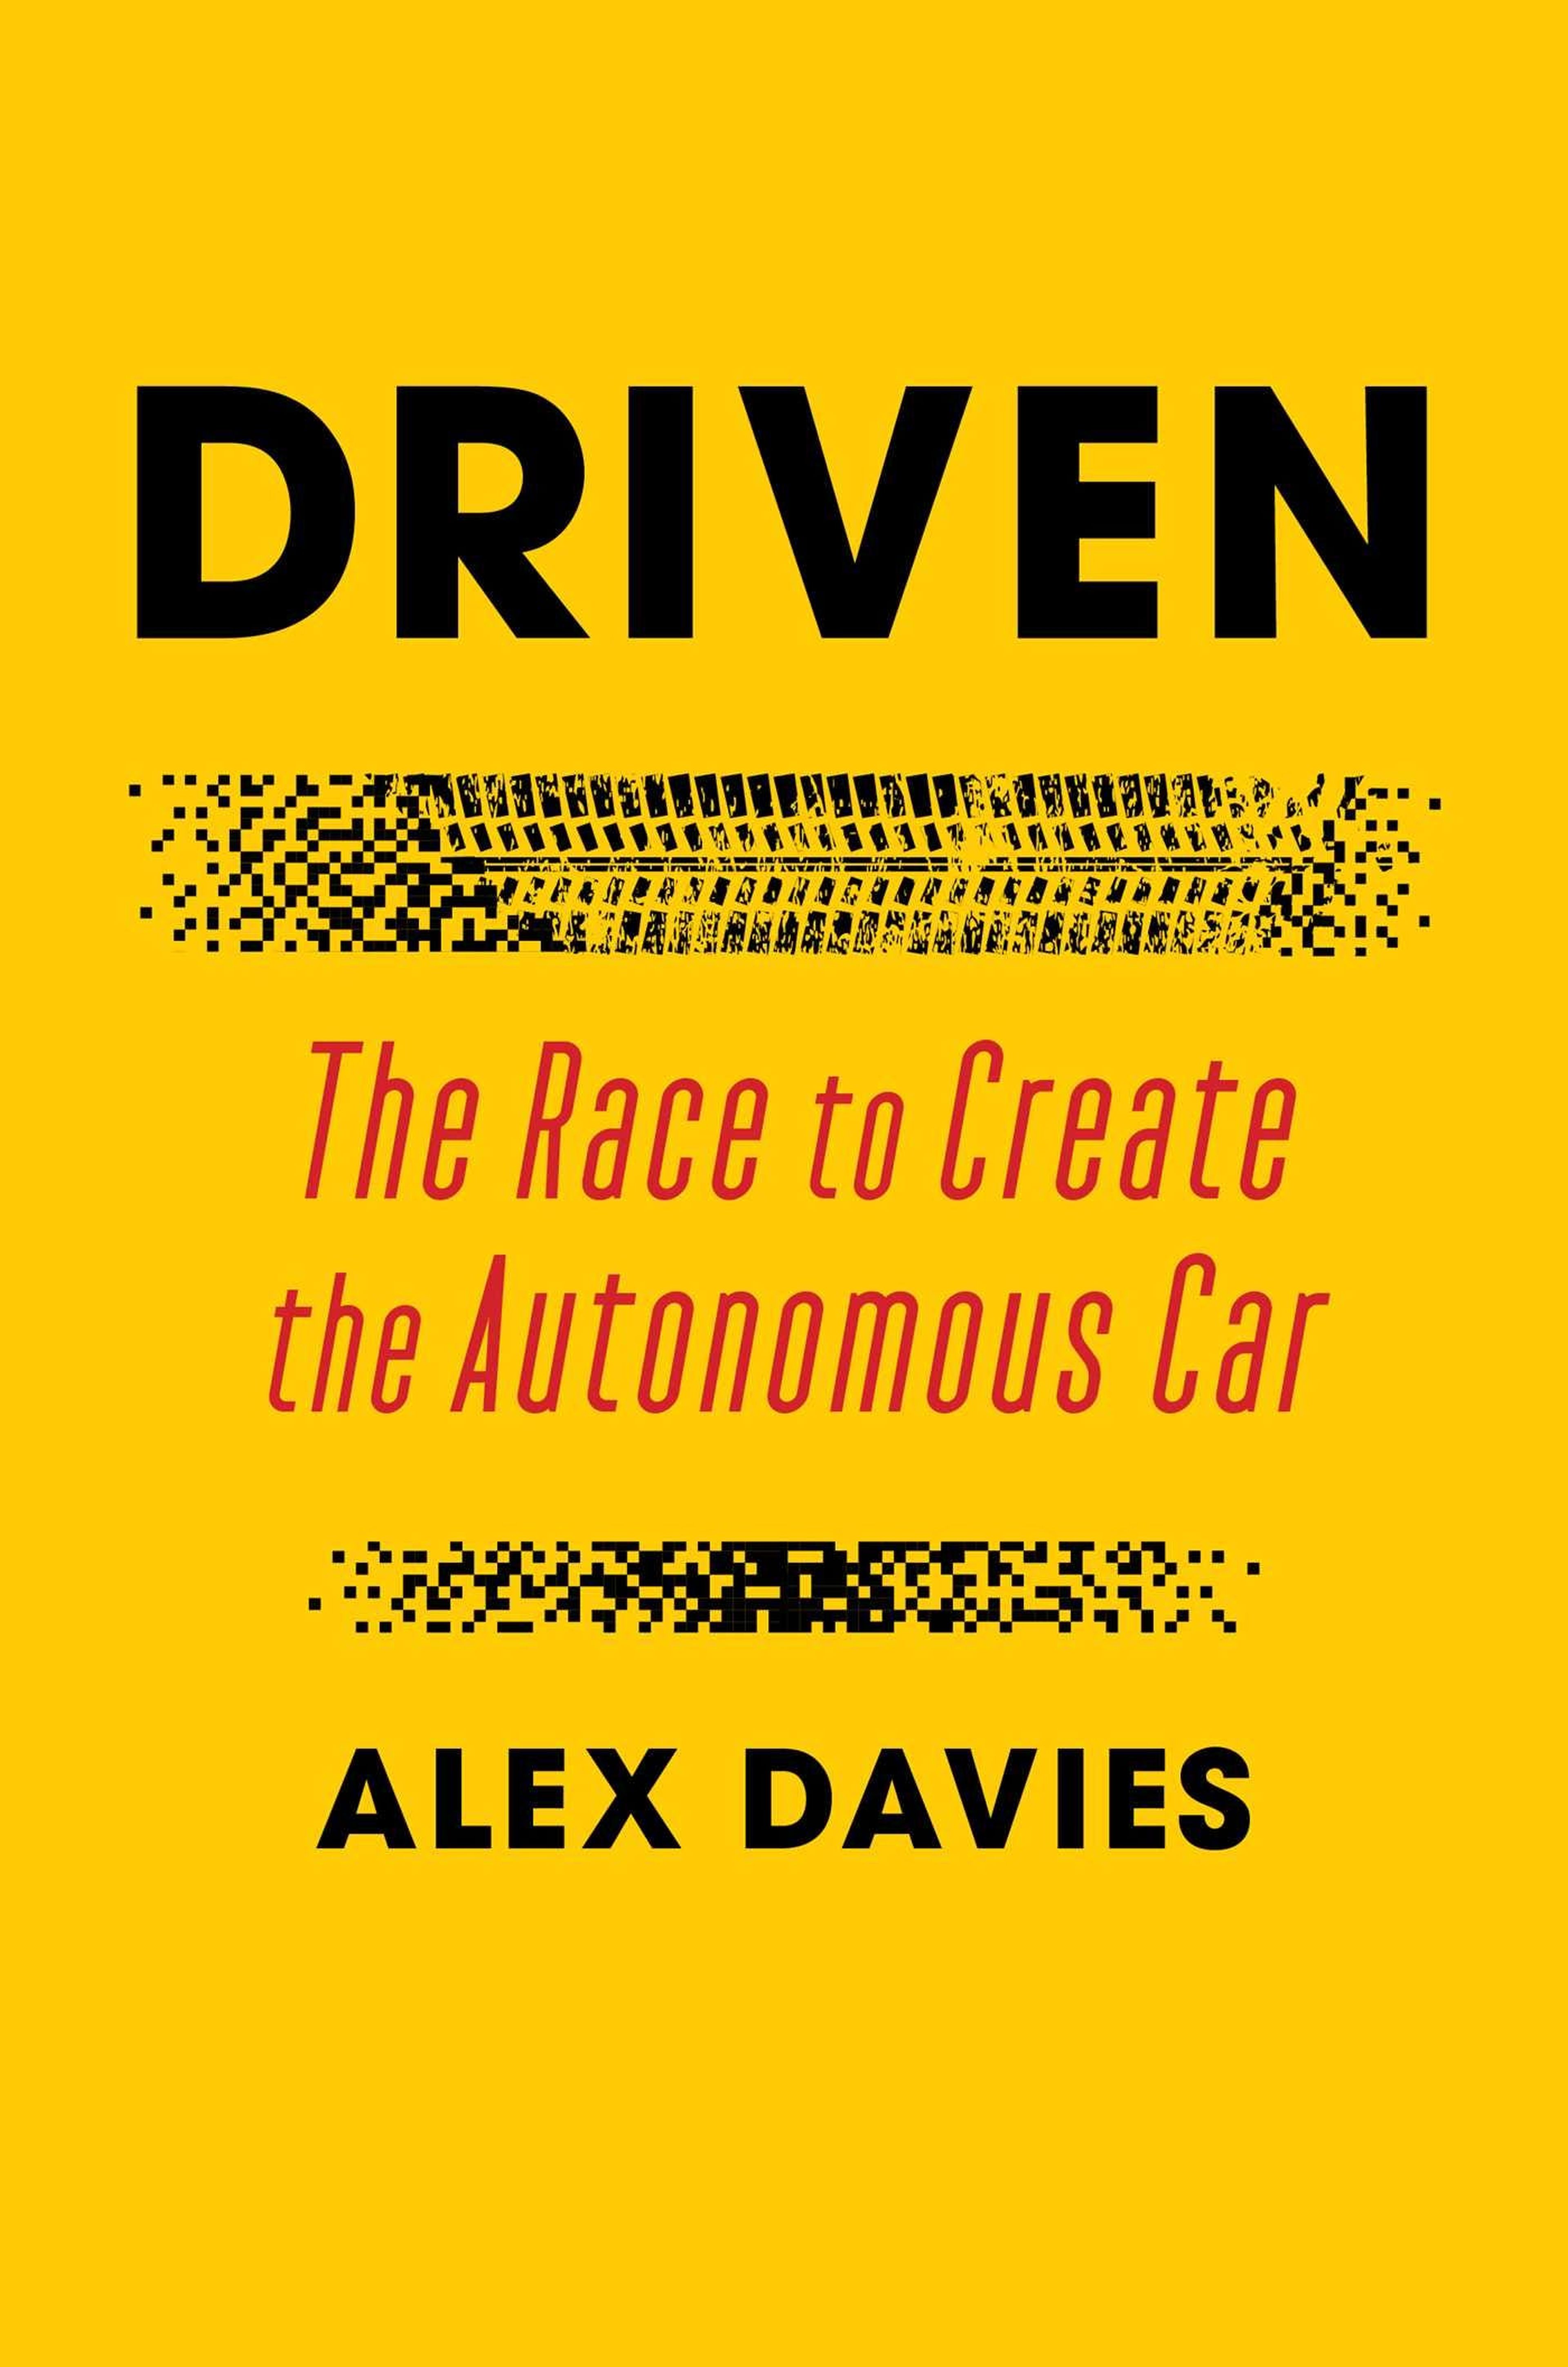 Este artículo es una adaptación del nuevo libro del redactor jefe de Insider, Alex Davies, "Driven: La carrera para crear el coche autónomo", publicado el 5 de enero por Simon & Schuster.